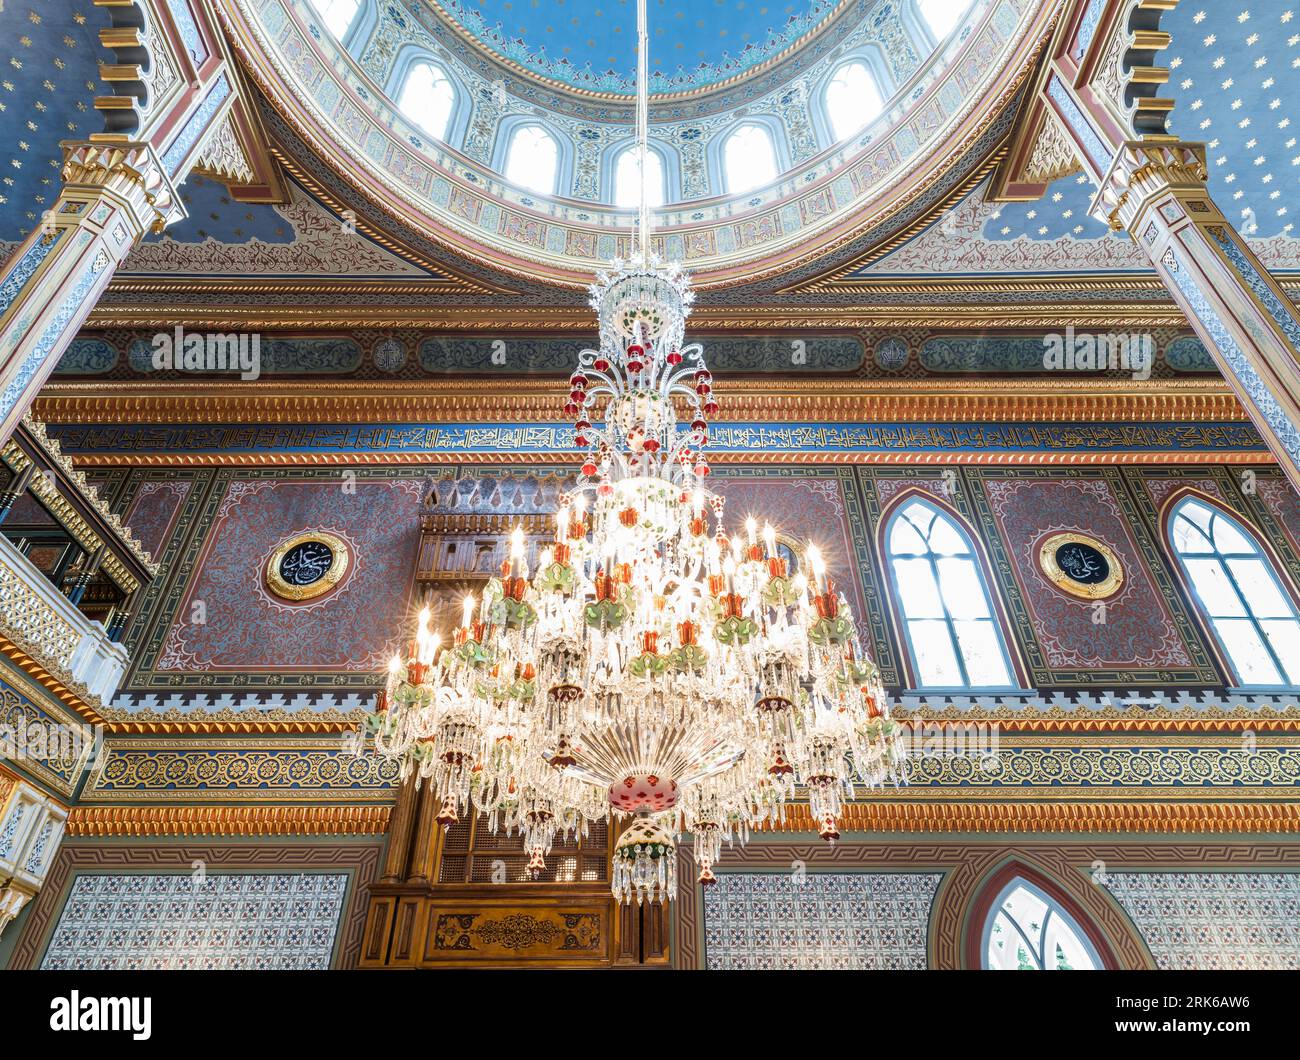 Fond carrelé dans la mosquée. Dôme de la mosquée, ornements orientaux. images de l'architecture islamique interior.interior architecture Banque D'Images